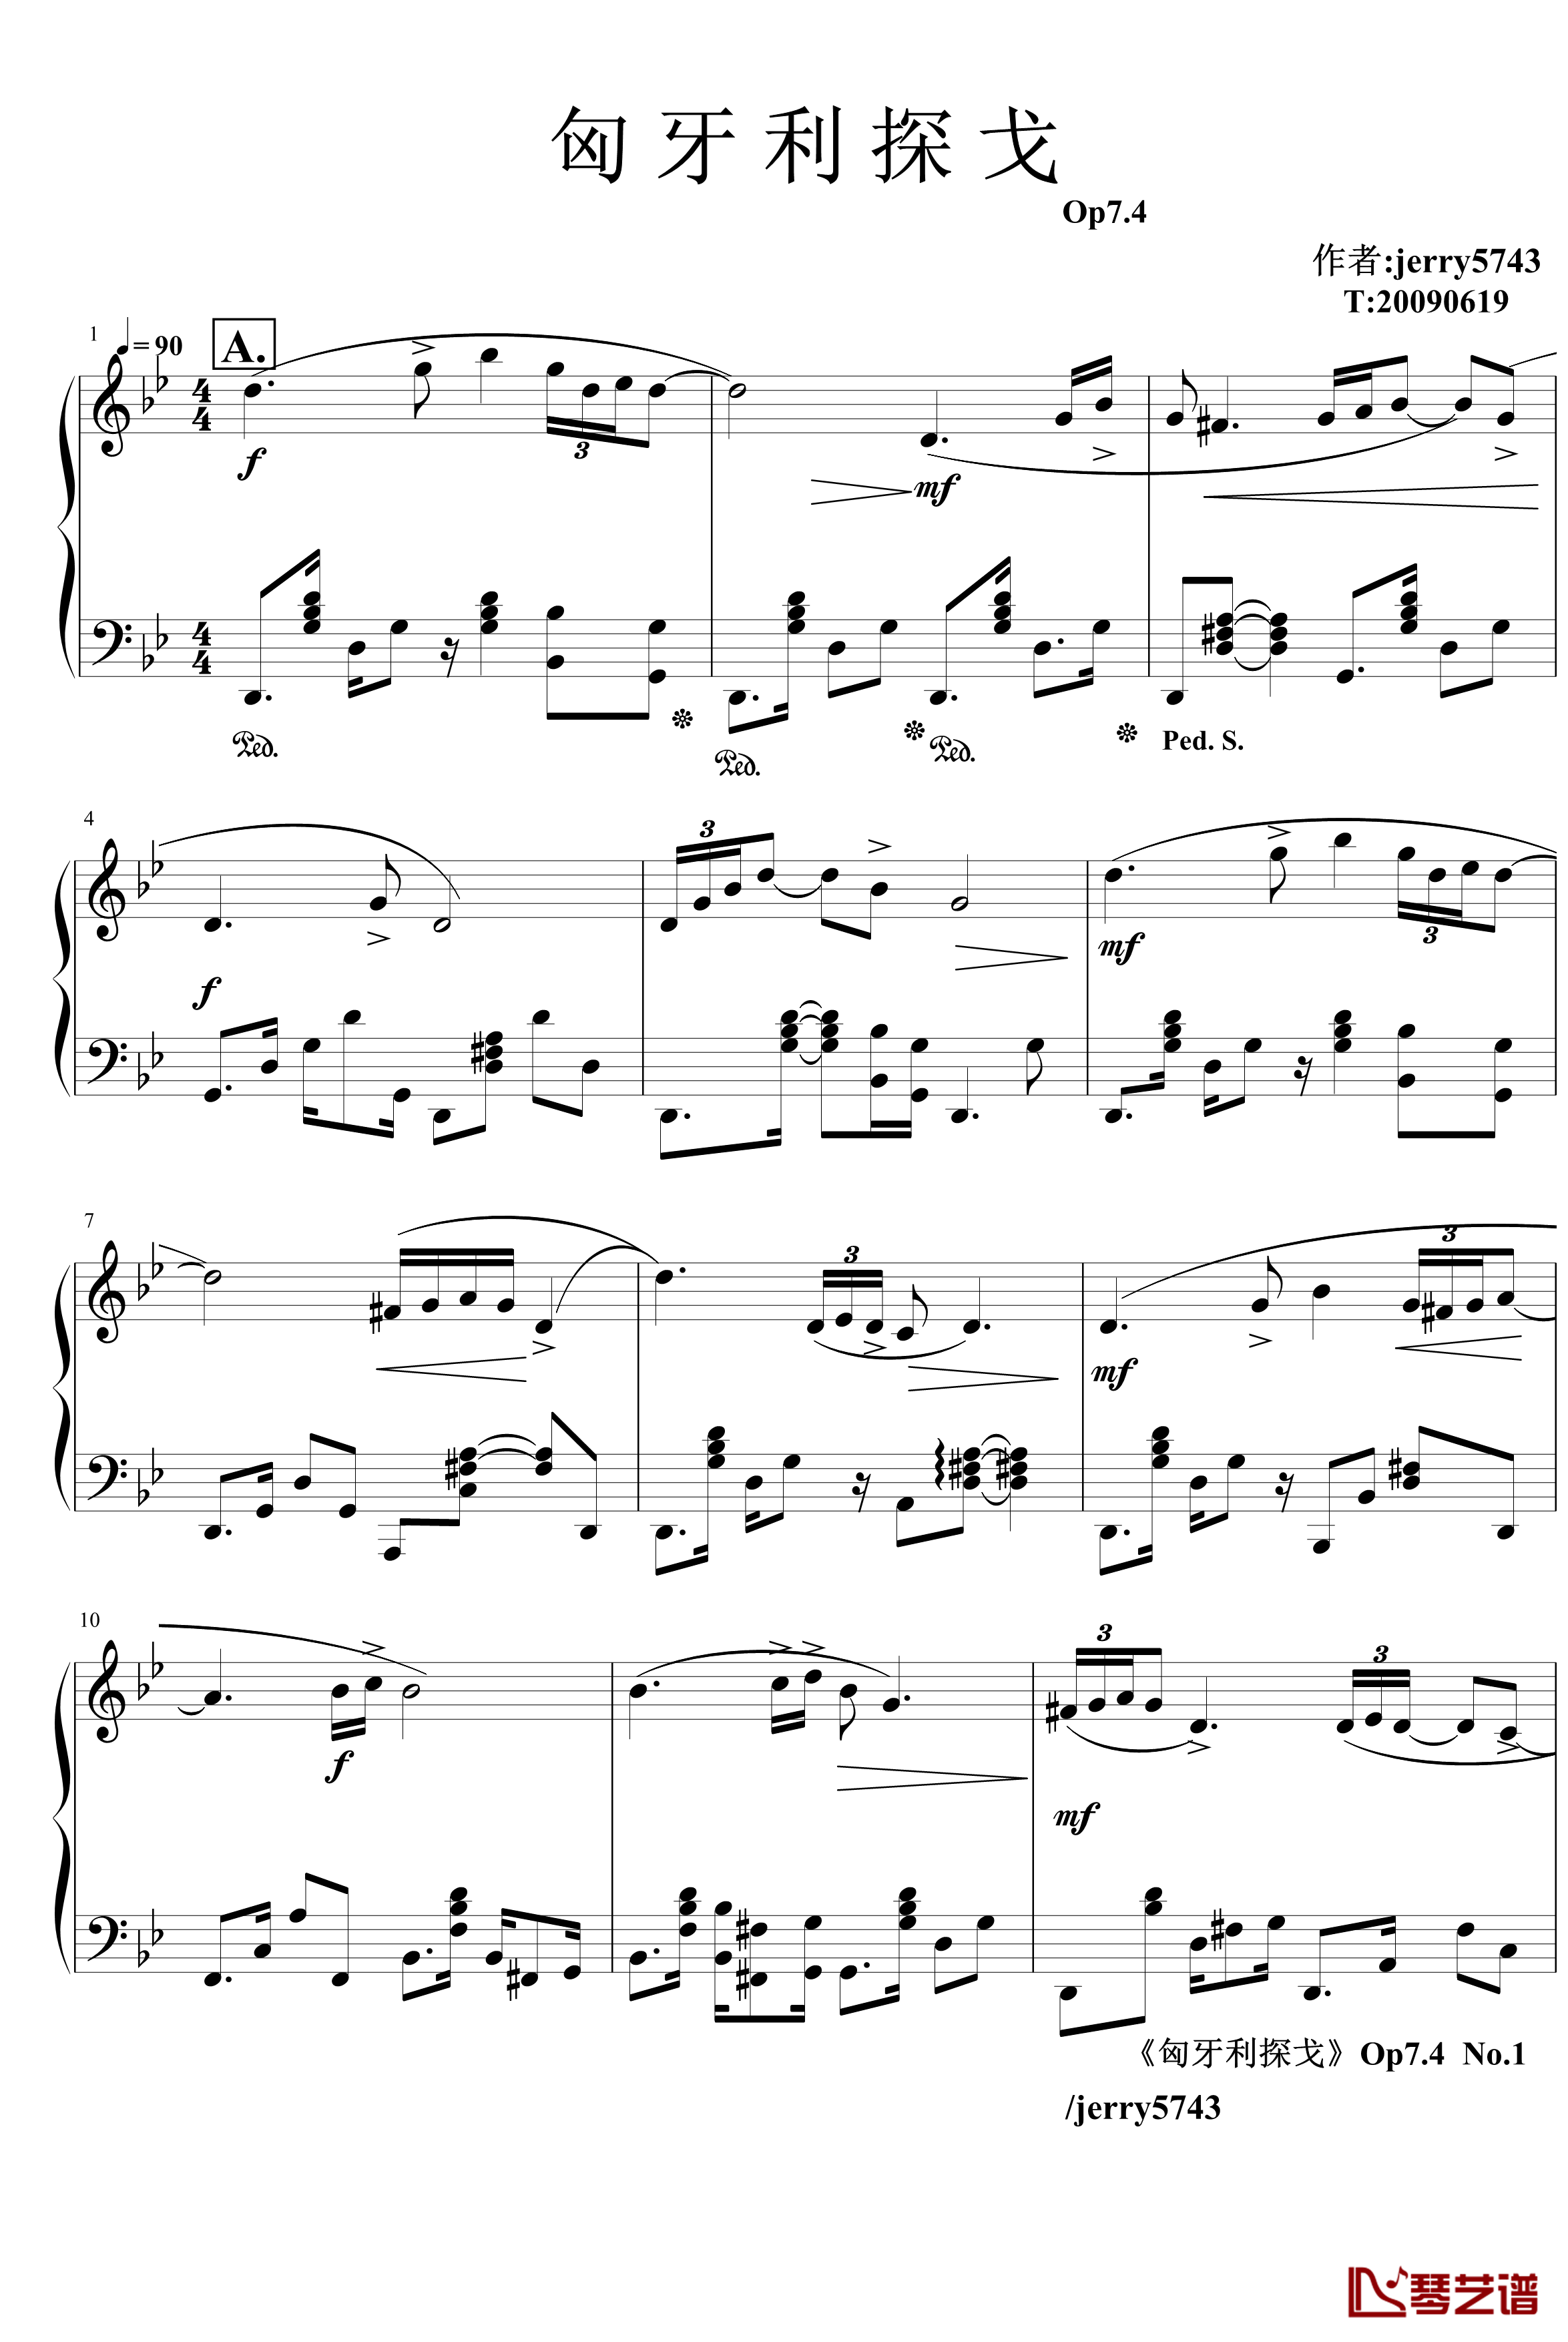 匈牙利探戈Op7.4钢琴谱-异国风情-jerry57431